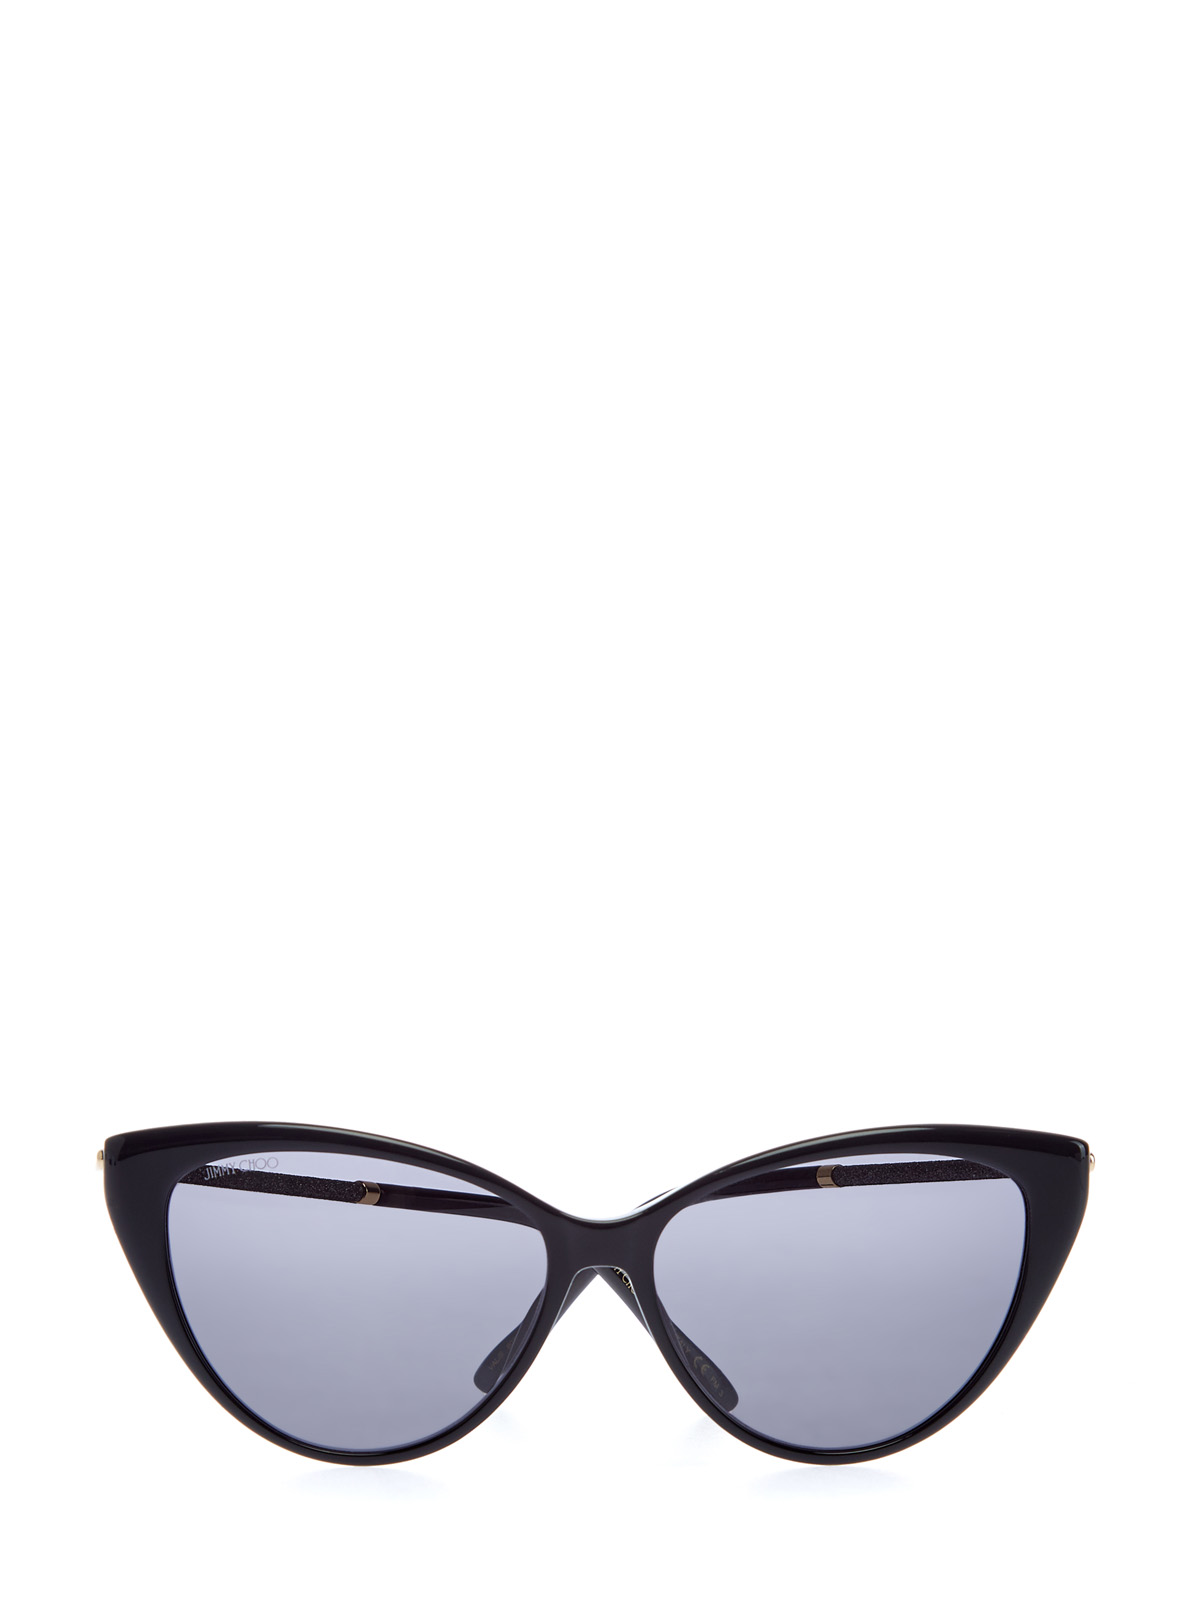 Очки Val в оправе кошачий глаз с мерцающими дужками JIMMY CHOO  (sunglasses), цвет черный